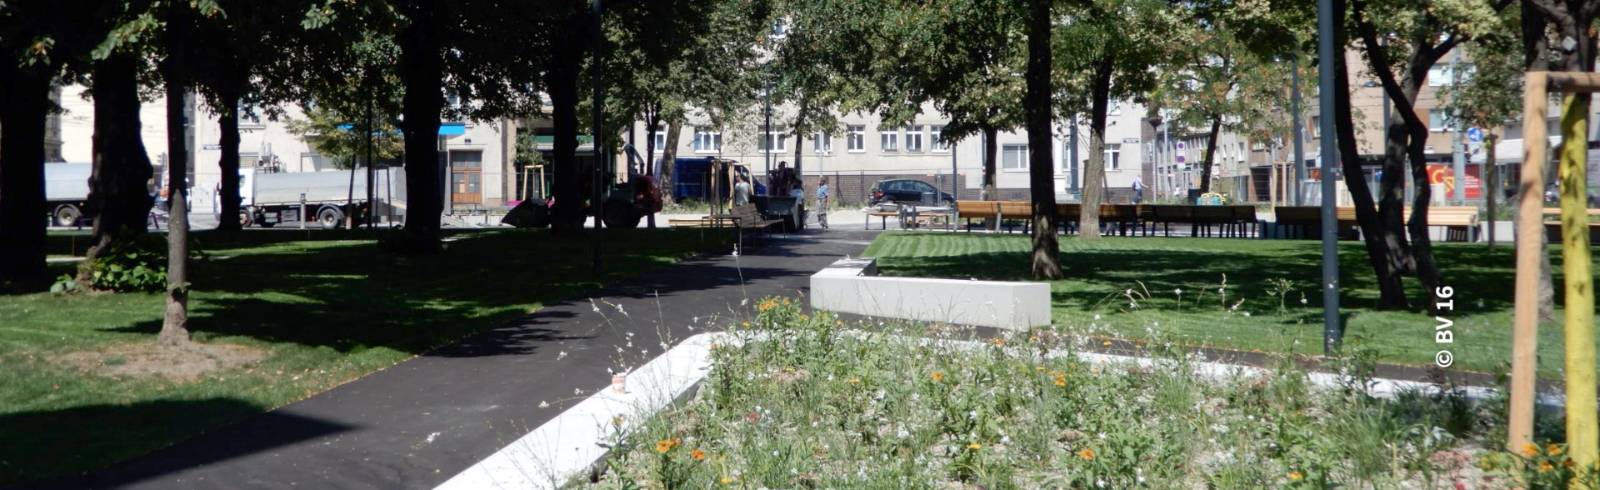 Bezirksflash: Zwei Ottakringer Parks umbenannt